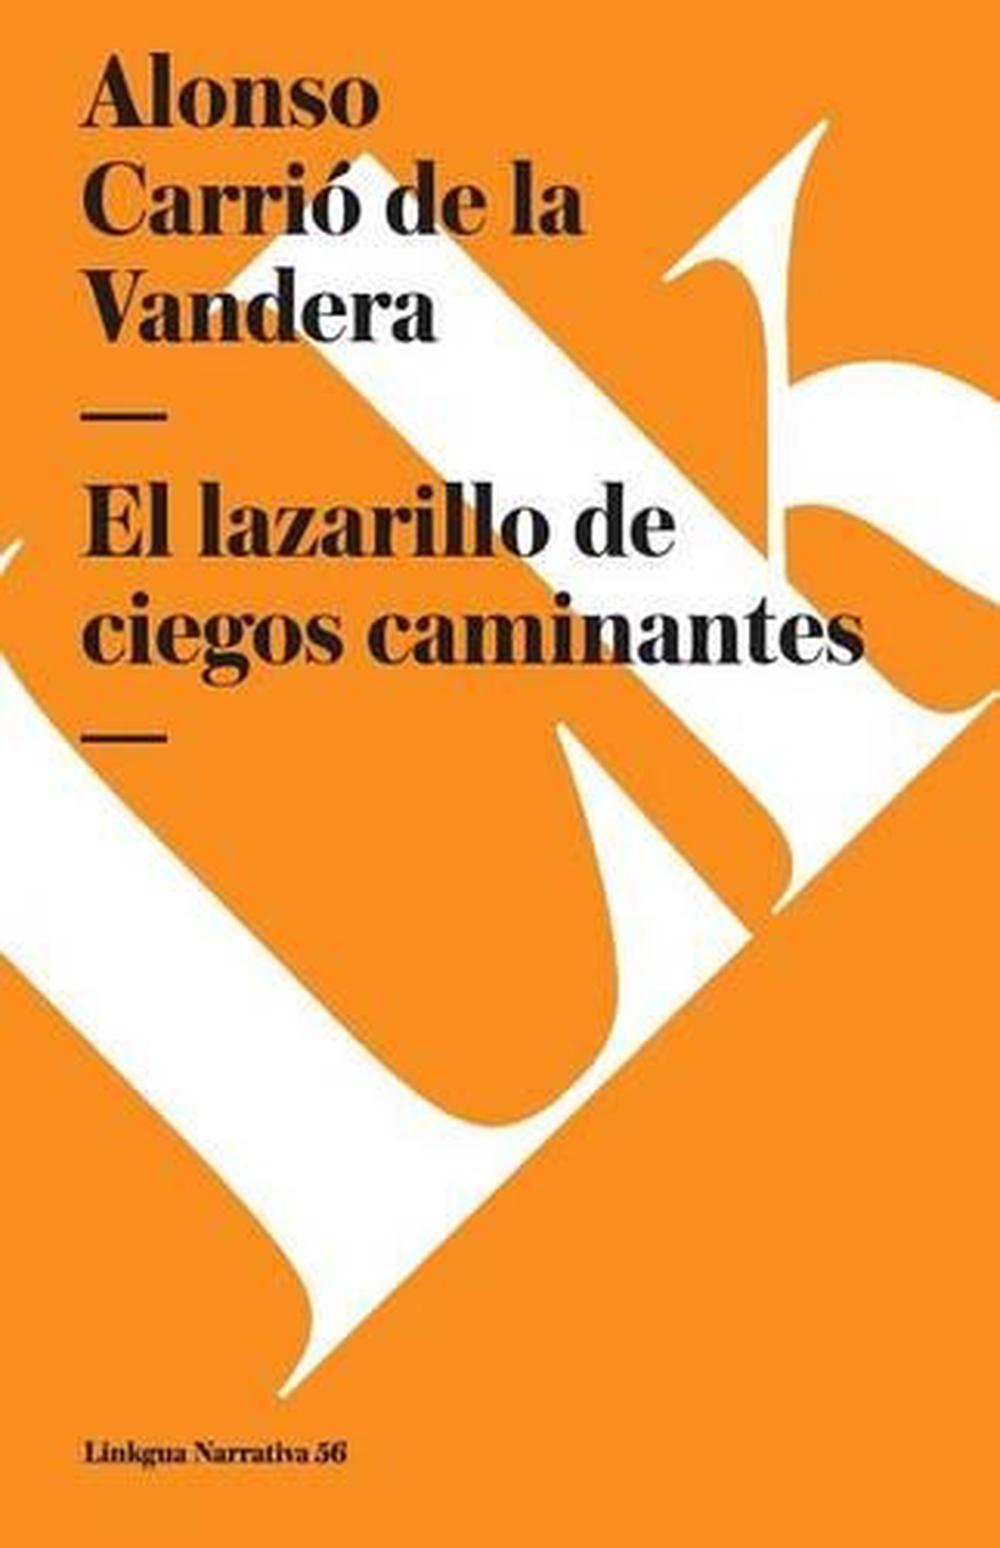 Lazarillo de Ciegos Caminantes by Alonso Carrio De La Vandera (Spanish ...